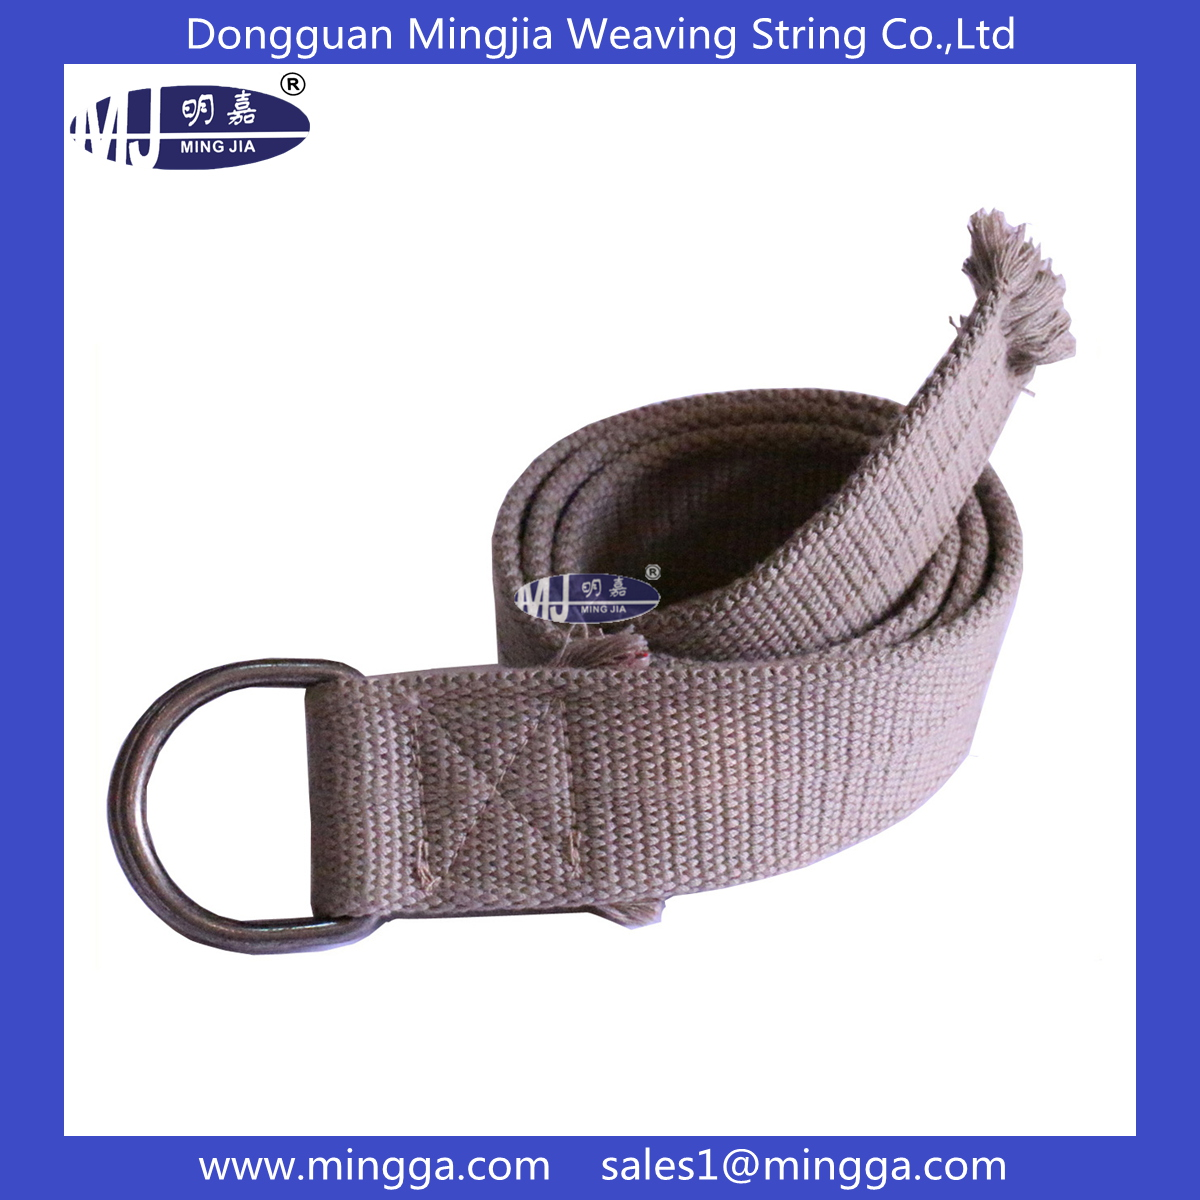 MJ-B027 webbing belt